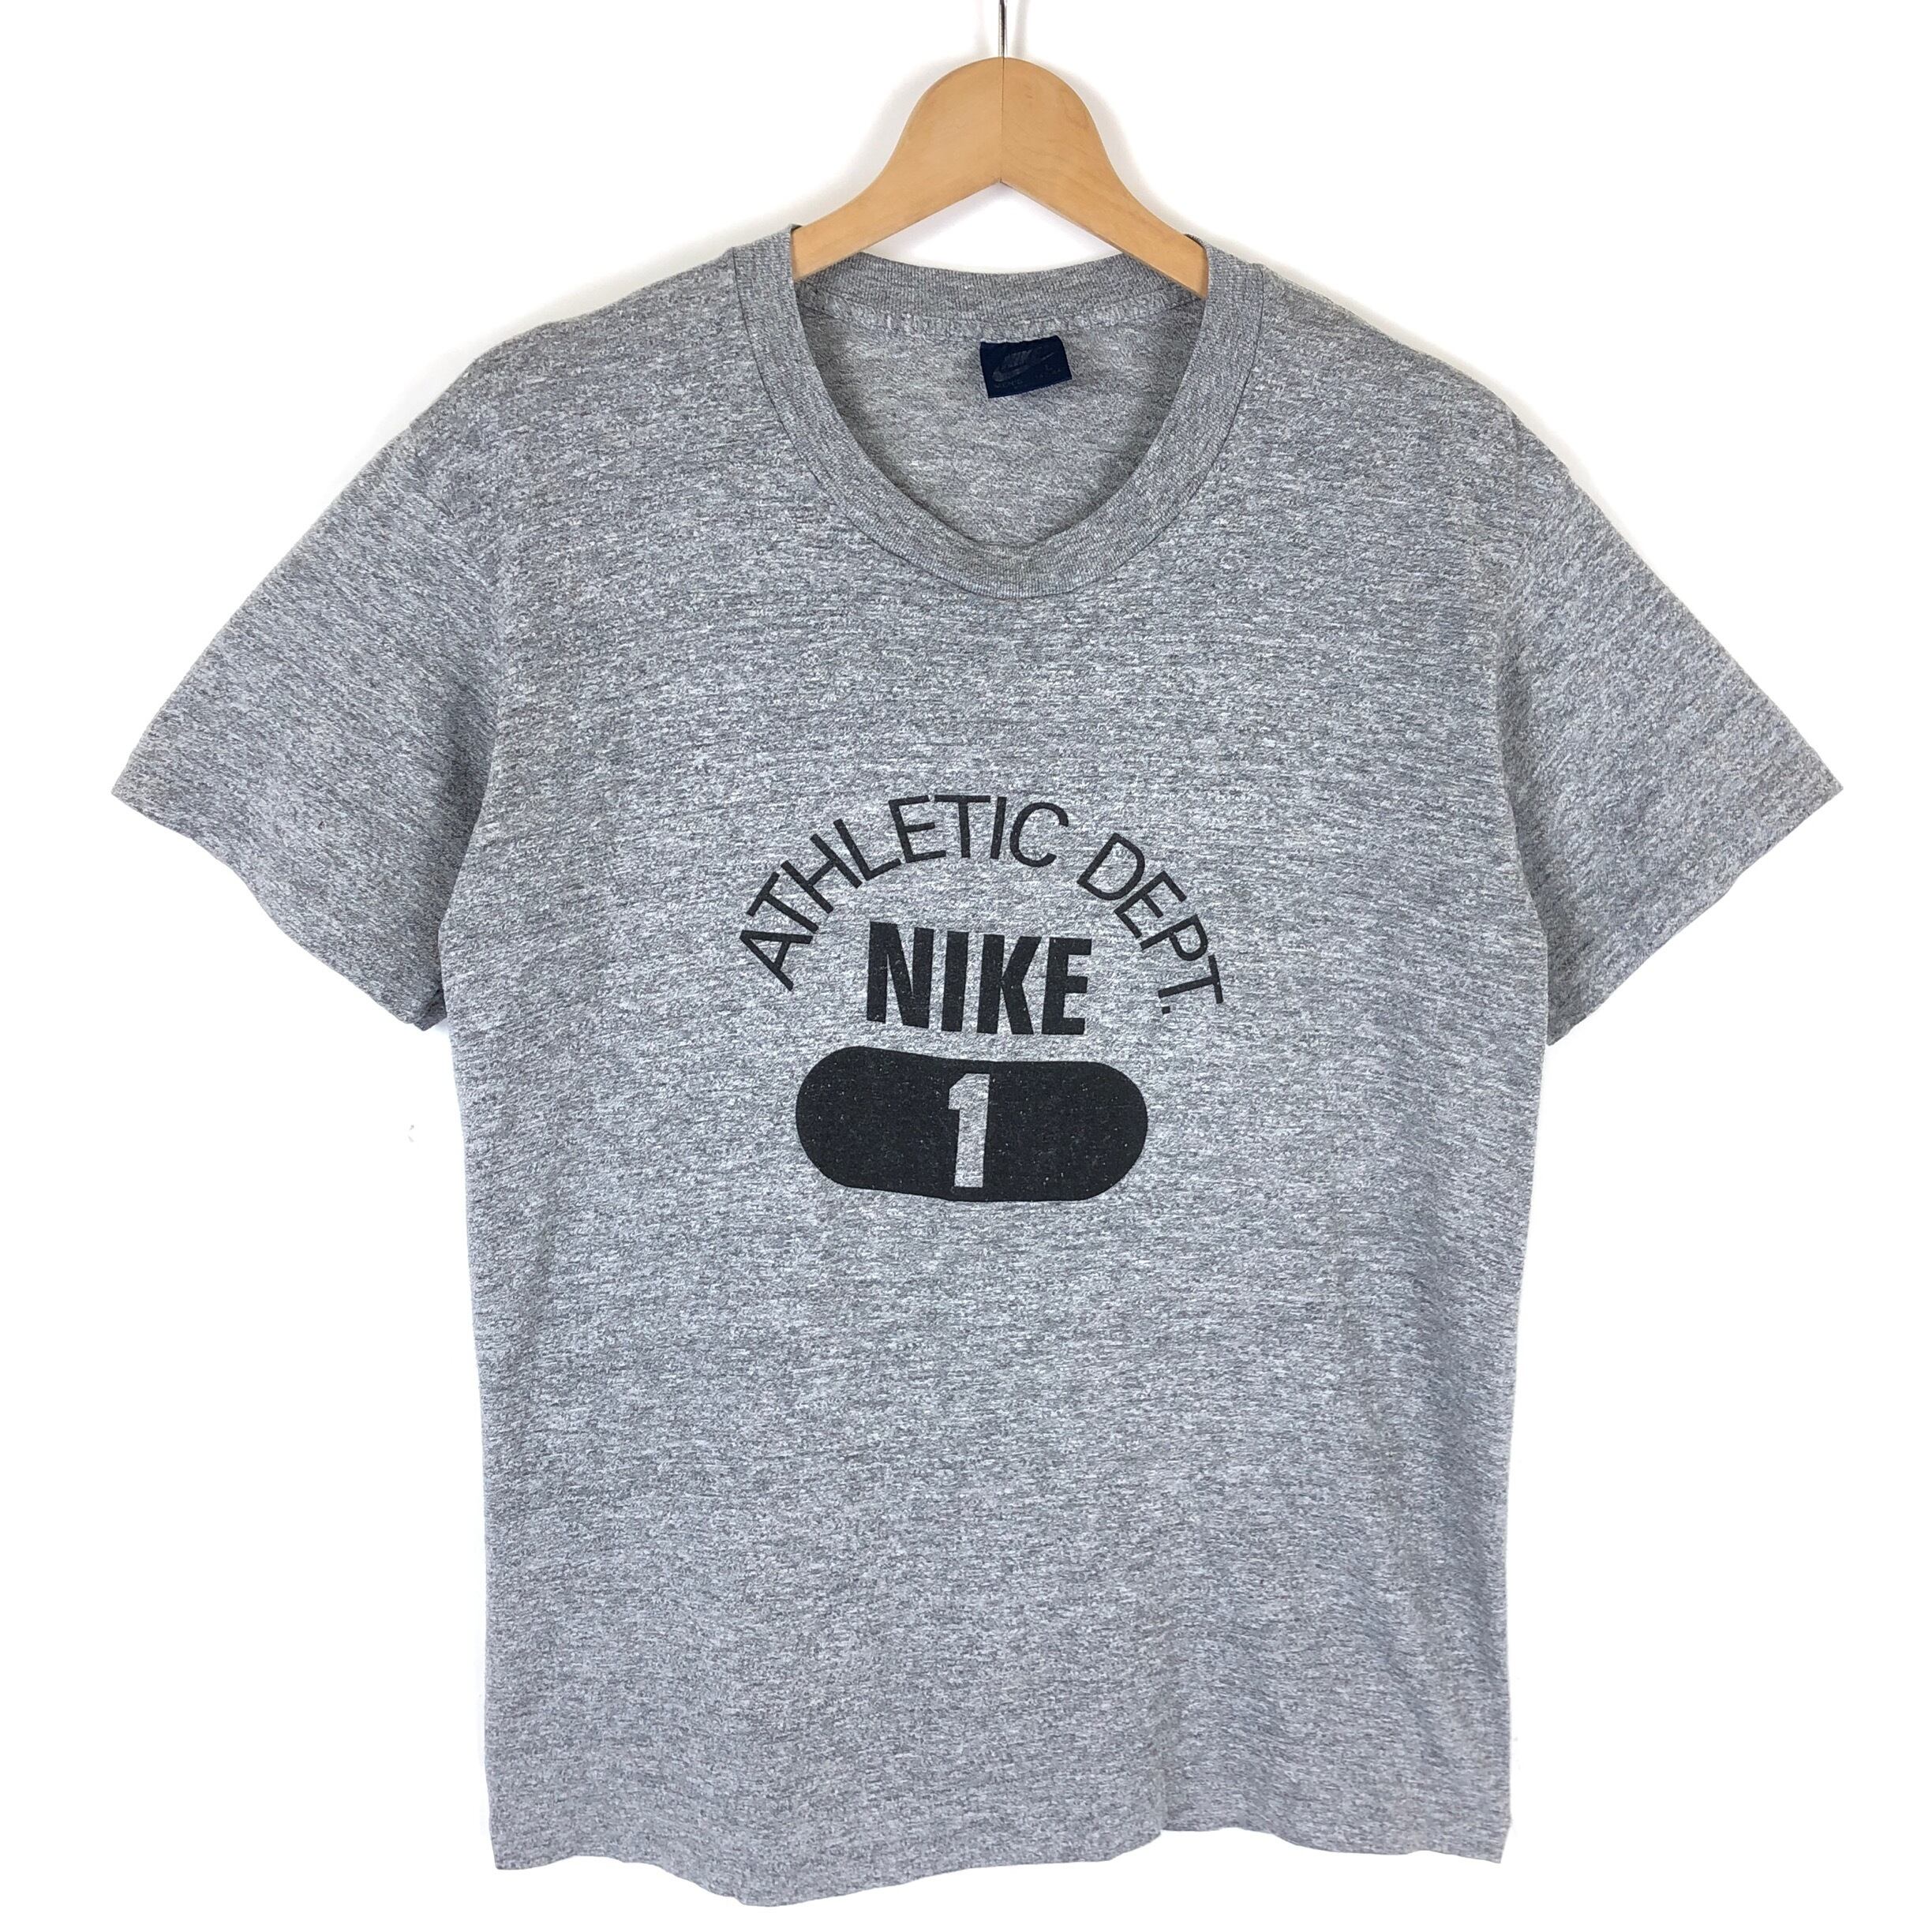 ナイキ NIKE Tシャツ ロゴ プリント ATHLETIC DEPT 古着 80年代 紺タグ ...